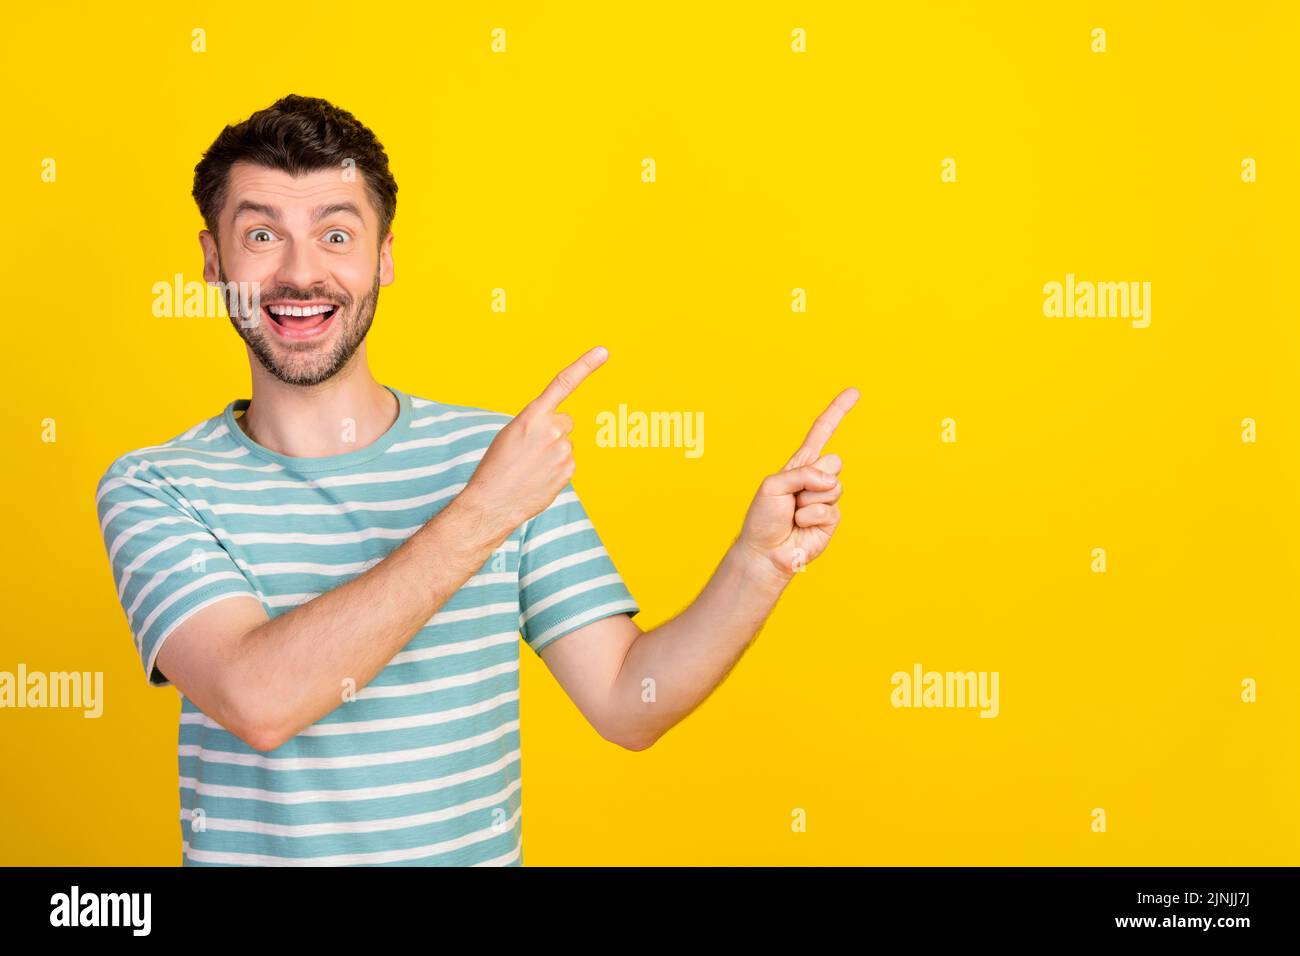 Portrait Foto von jungen attraktiven Kerl aufgeregt verrückt zeigen leeren Raum Werbung isoliert auf gelbem Hintergrund Stockfoto